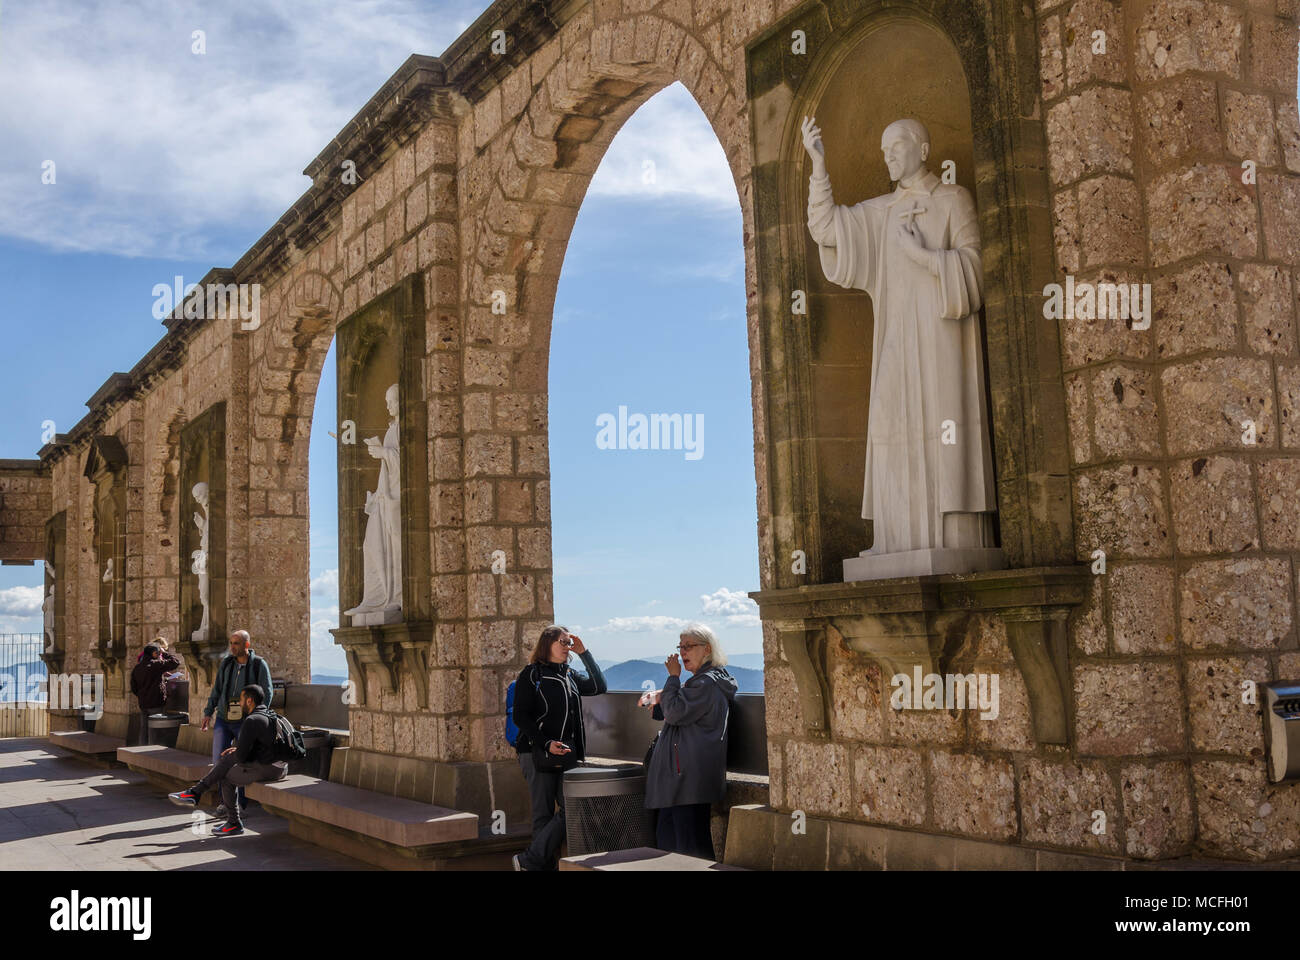 Un mur de pierre à l'abbaye de Santa Maria de Montserrat en Espagne avec des arcades et des sculptures représentant des personnages religieux ou des scènes. Banque D'Images